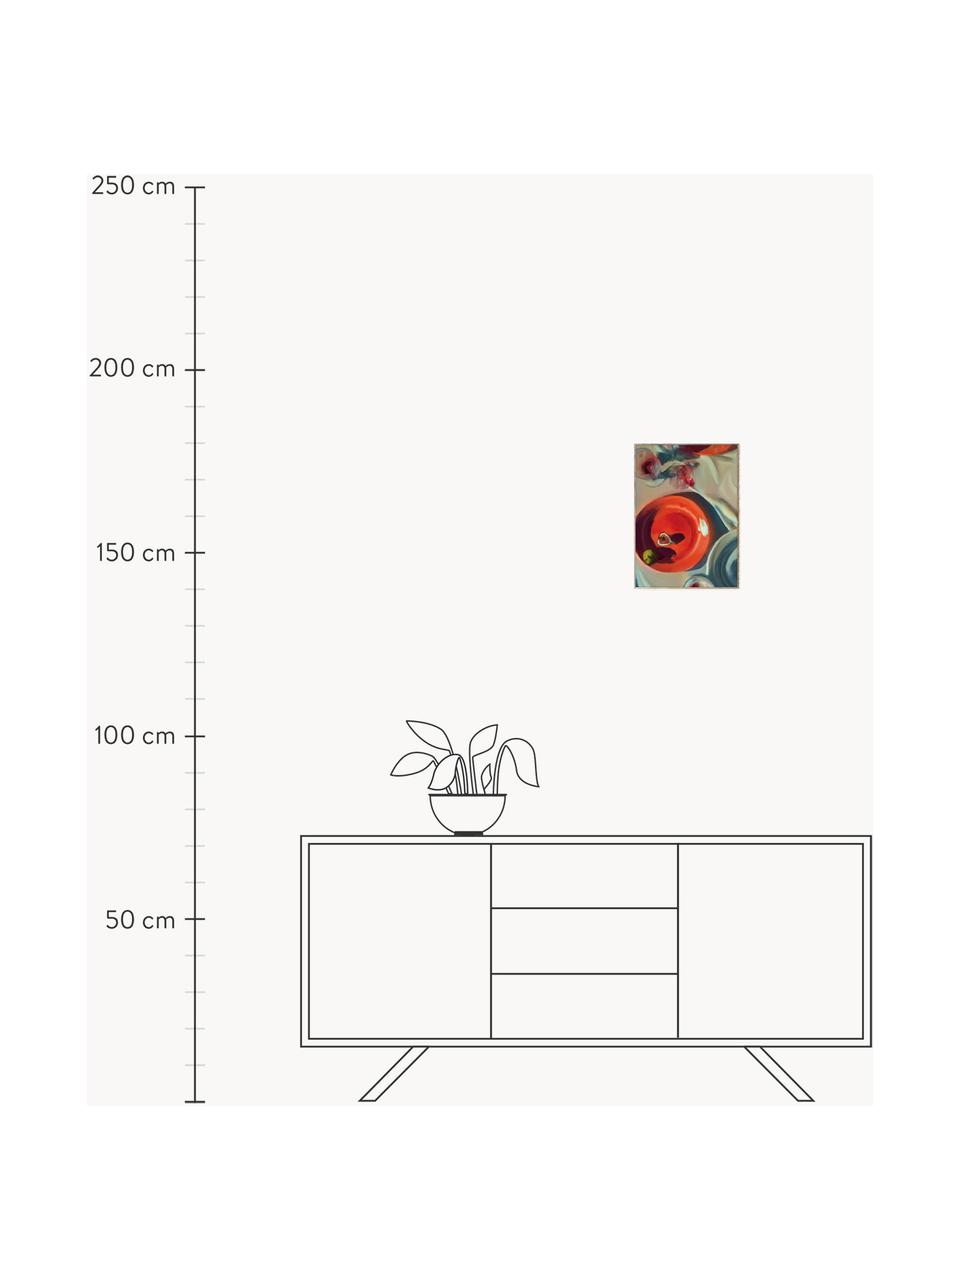 Plakát Fine Dining, 210g matný papír Hahnemühle, digitální tisk s 10 barvami odolnými vůči UV záření, Korálově červená, greige, Š 30 cm, V 40 cm